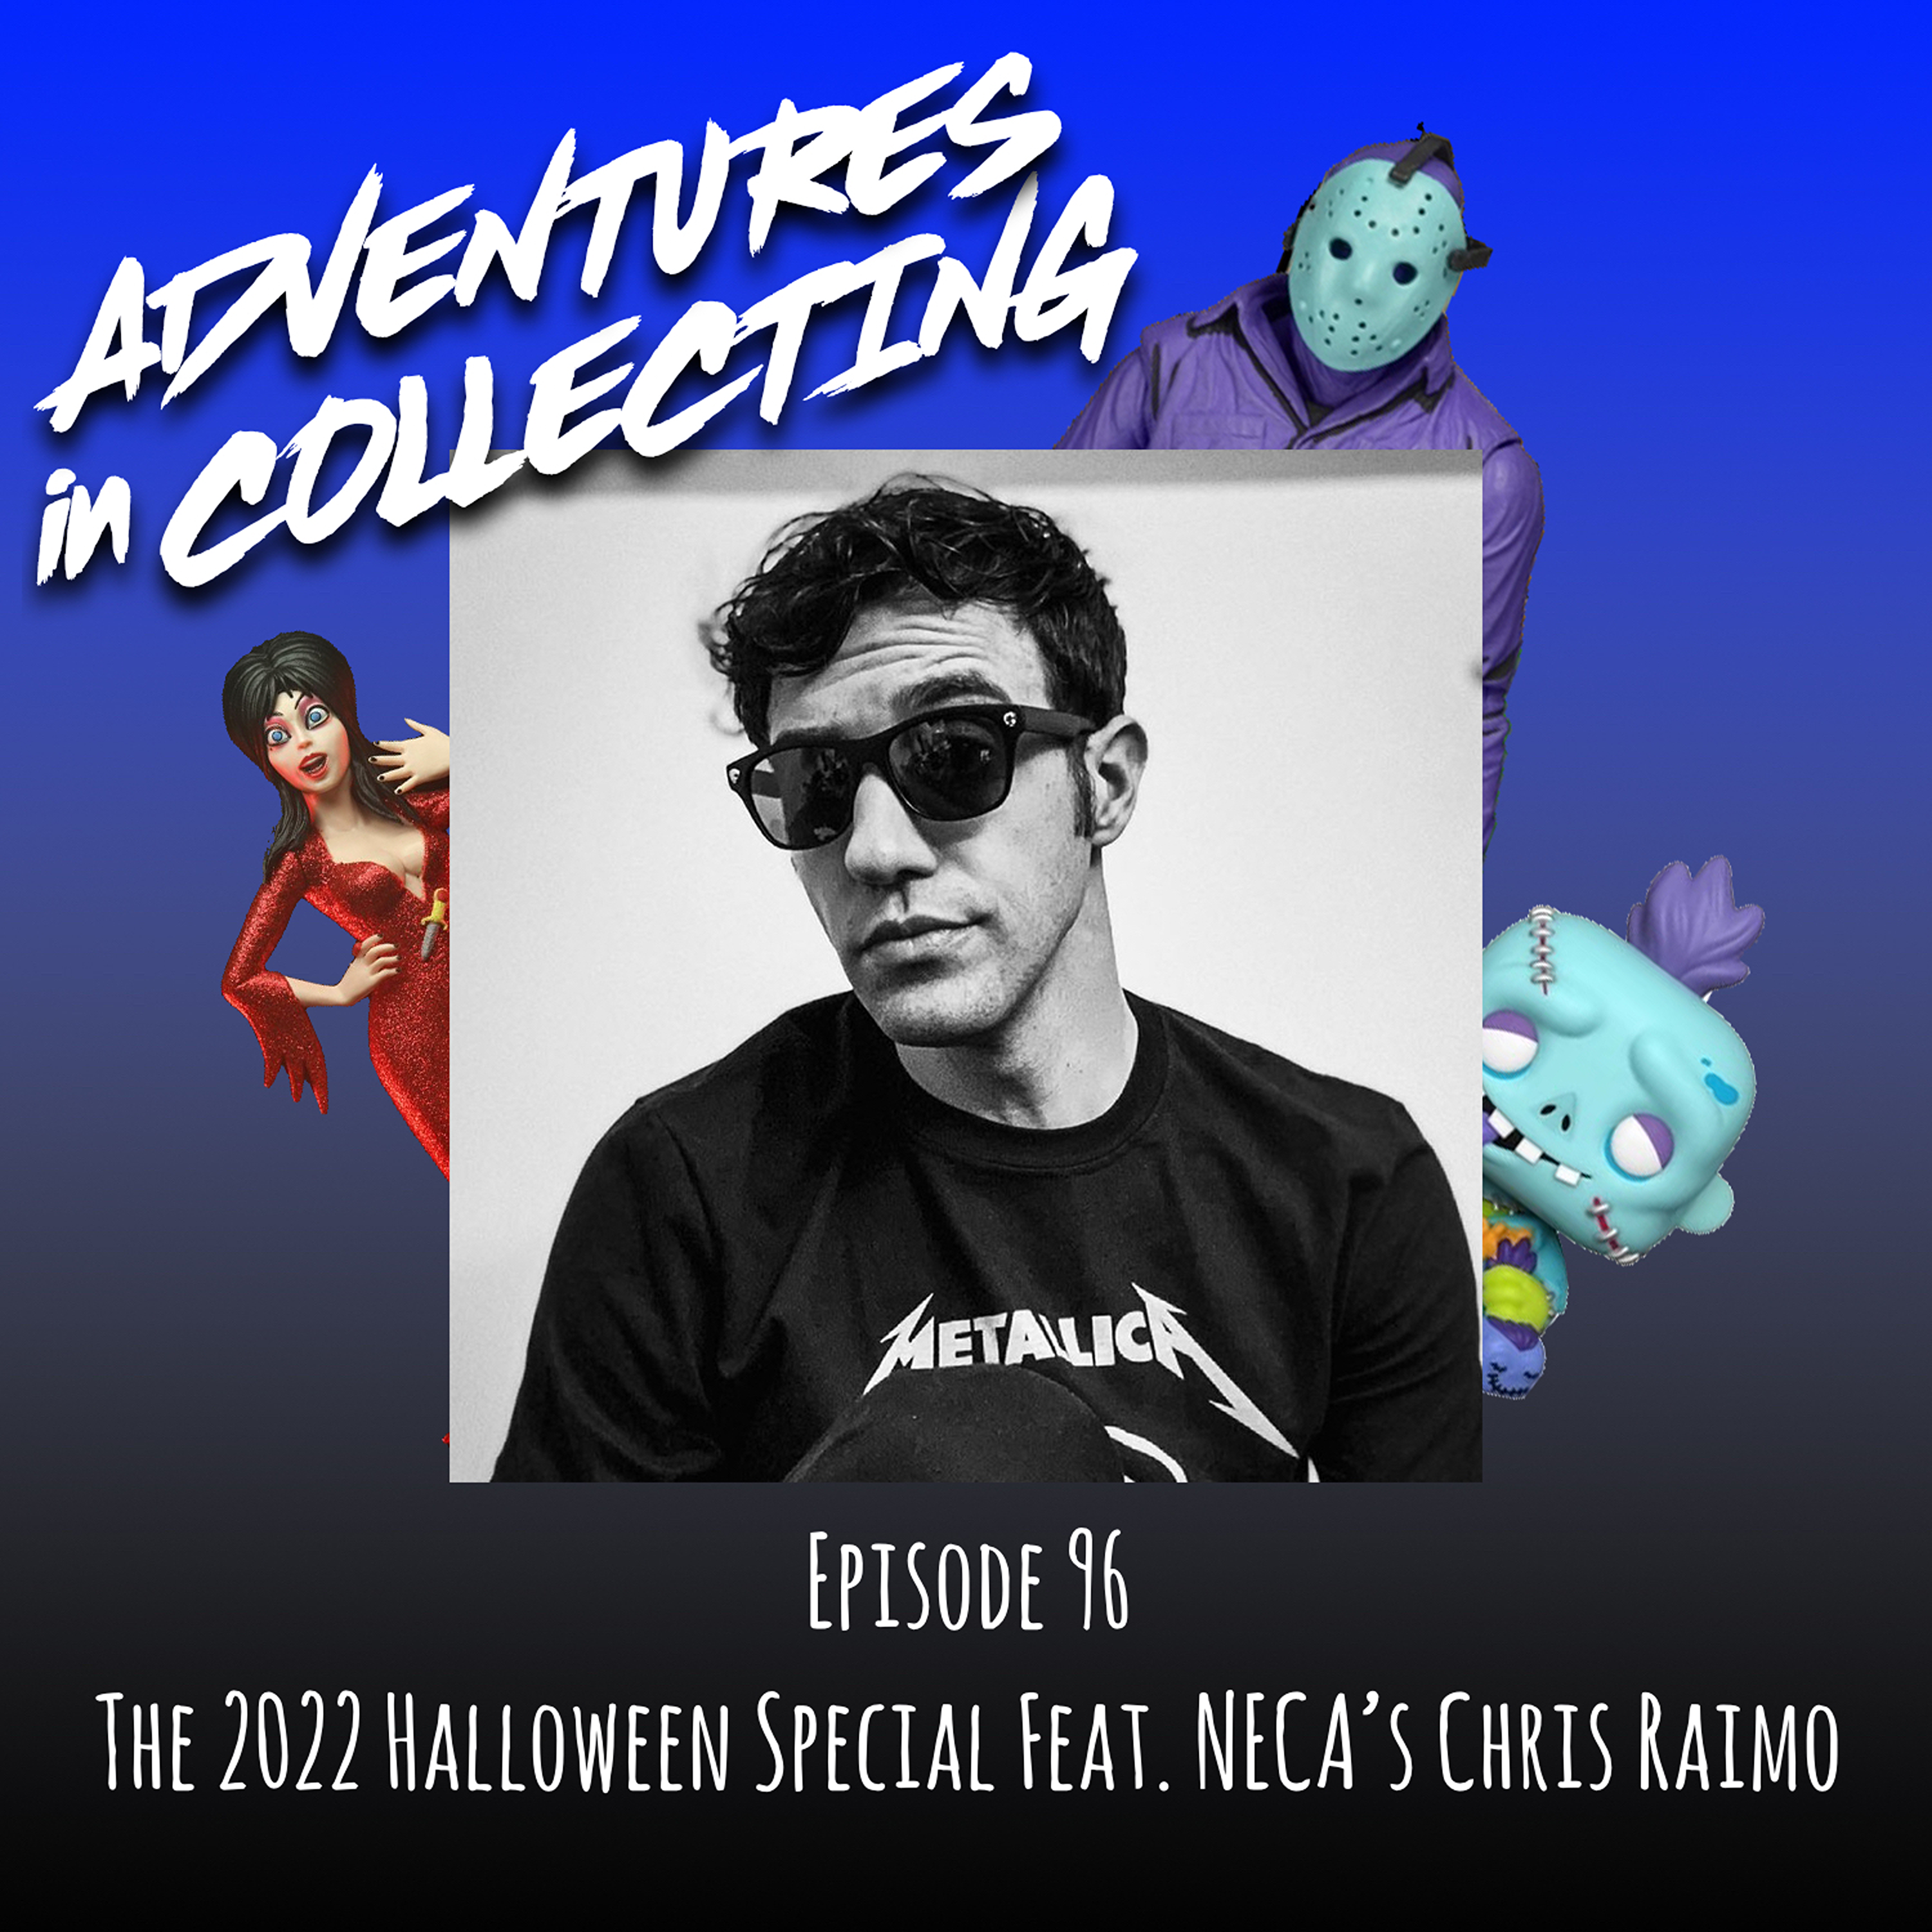 The 2022 Halloween Special Featuring NECA's Senior Graphic Designer, Chris Raimo